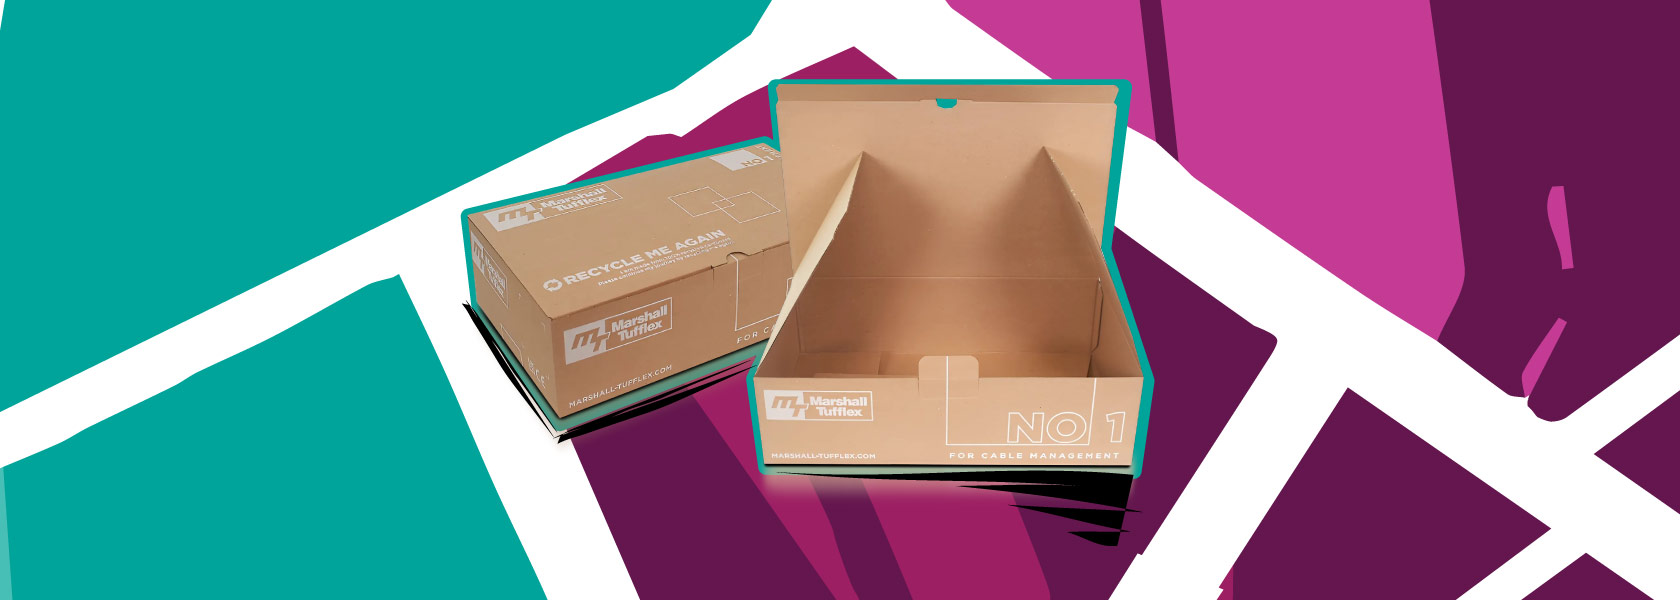 Cardboard Shipping Boxes Marshall Tufflex